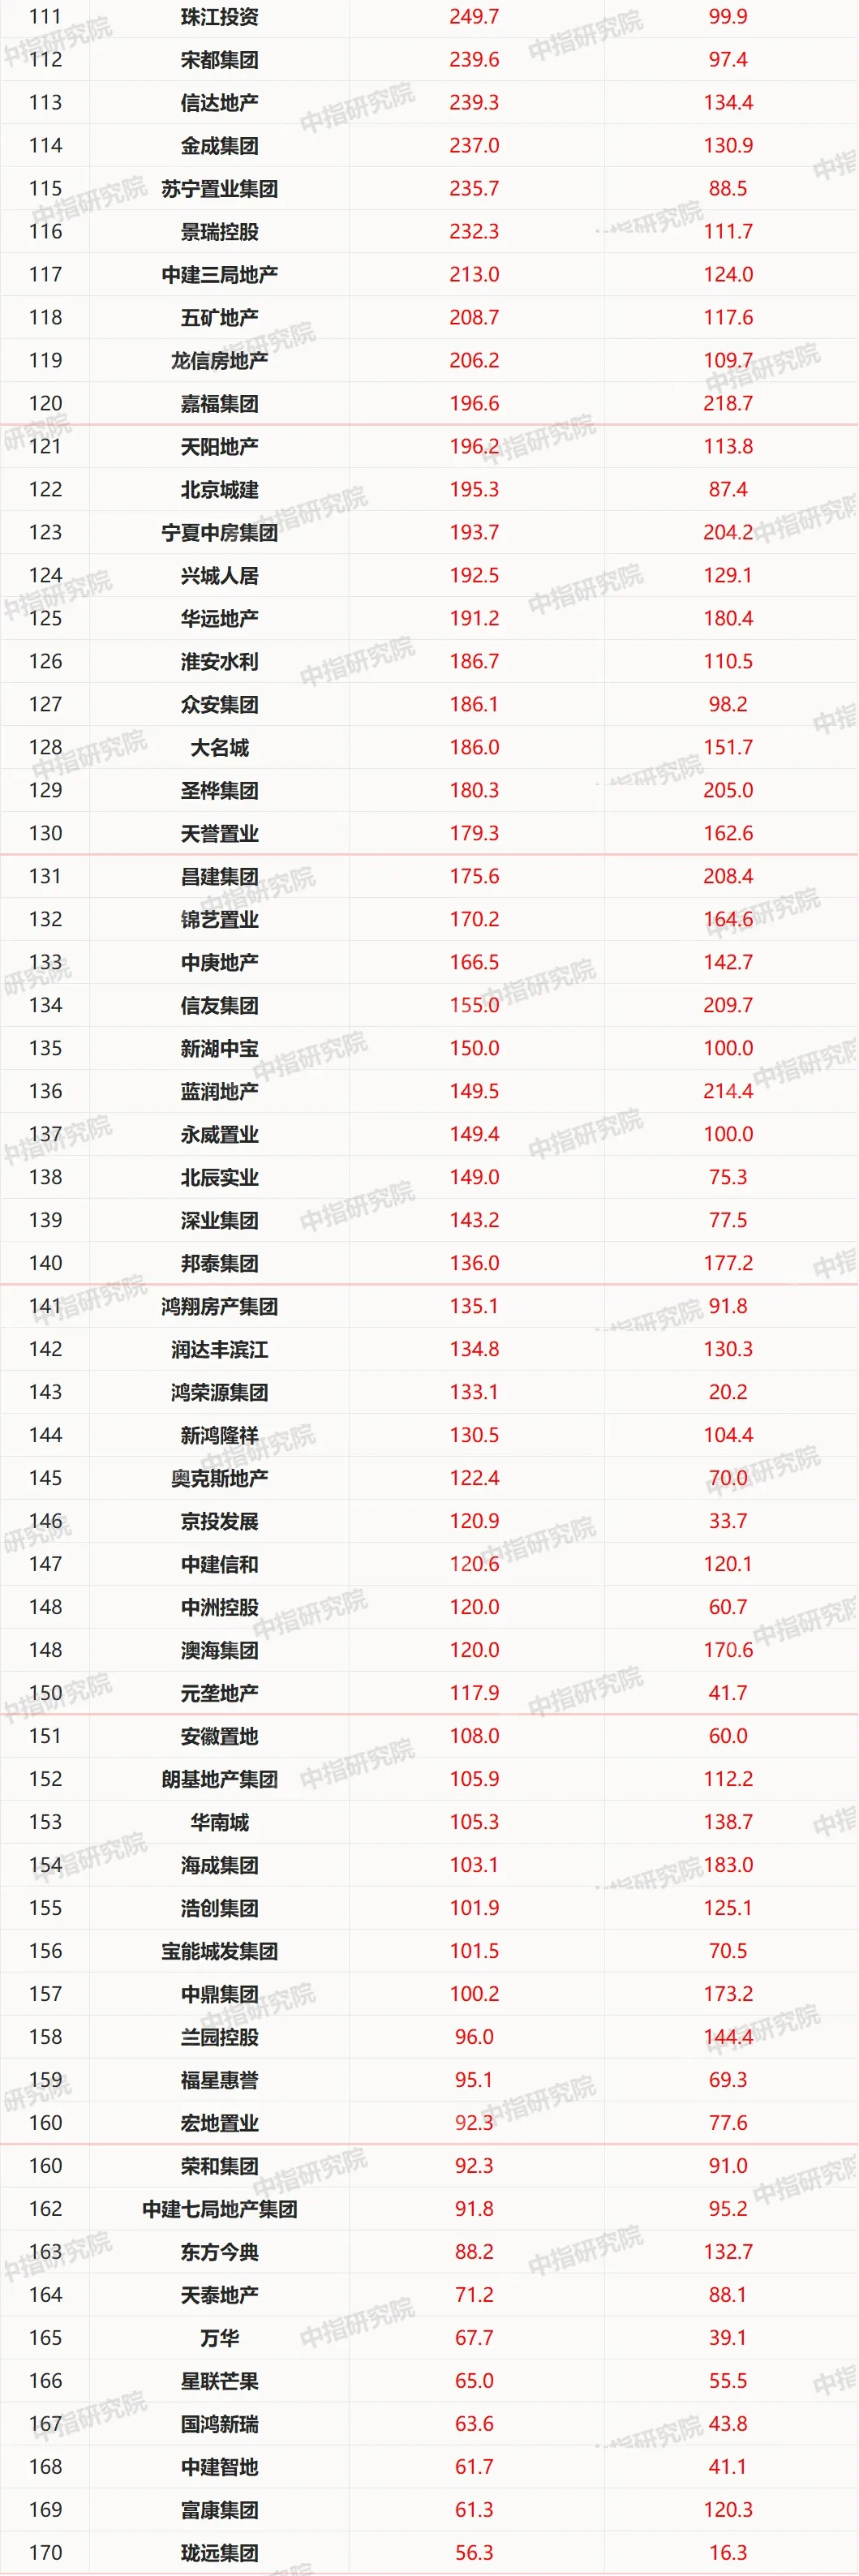 2020年1-11月中国房地产企业销售业绩100